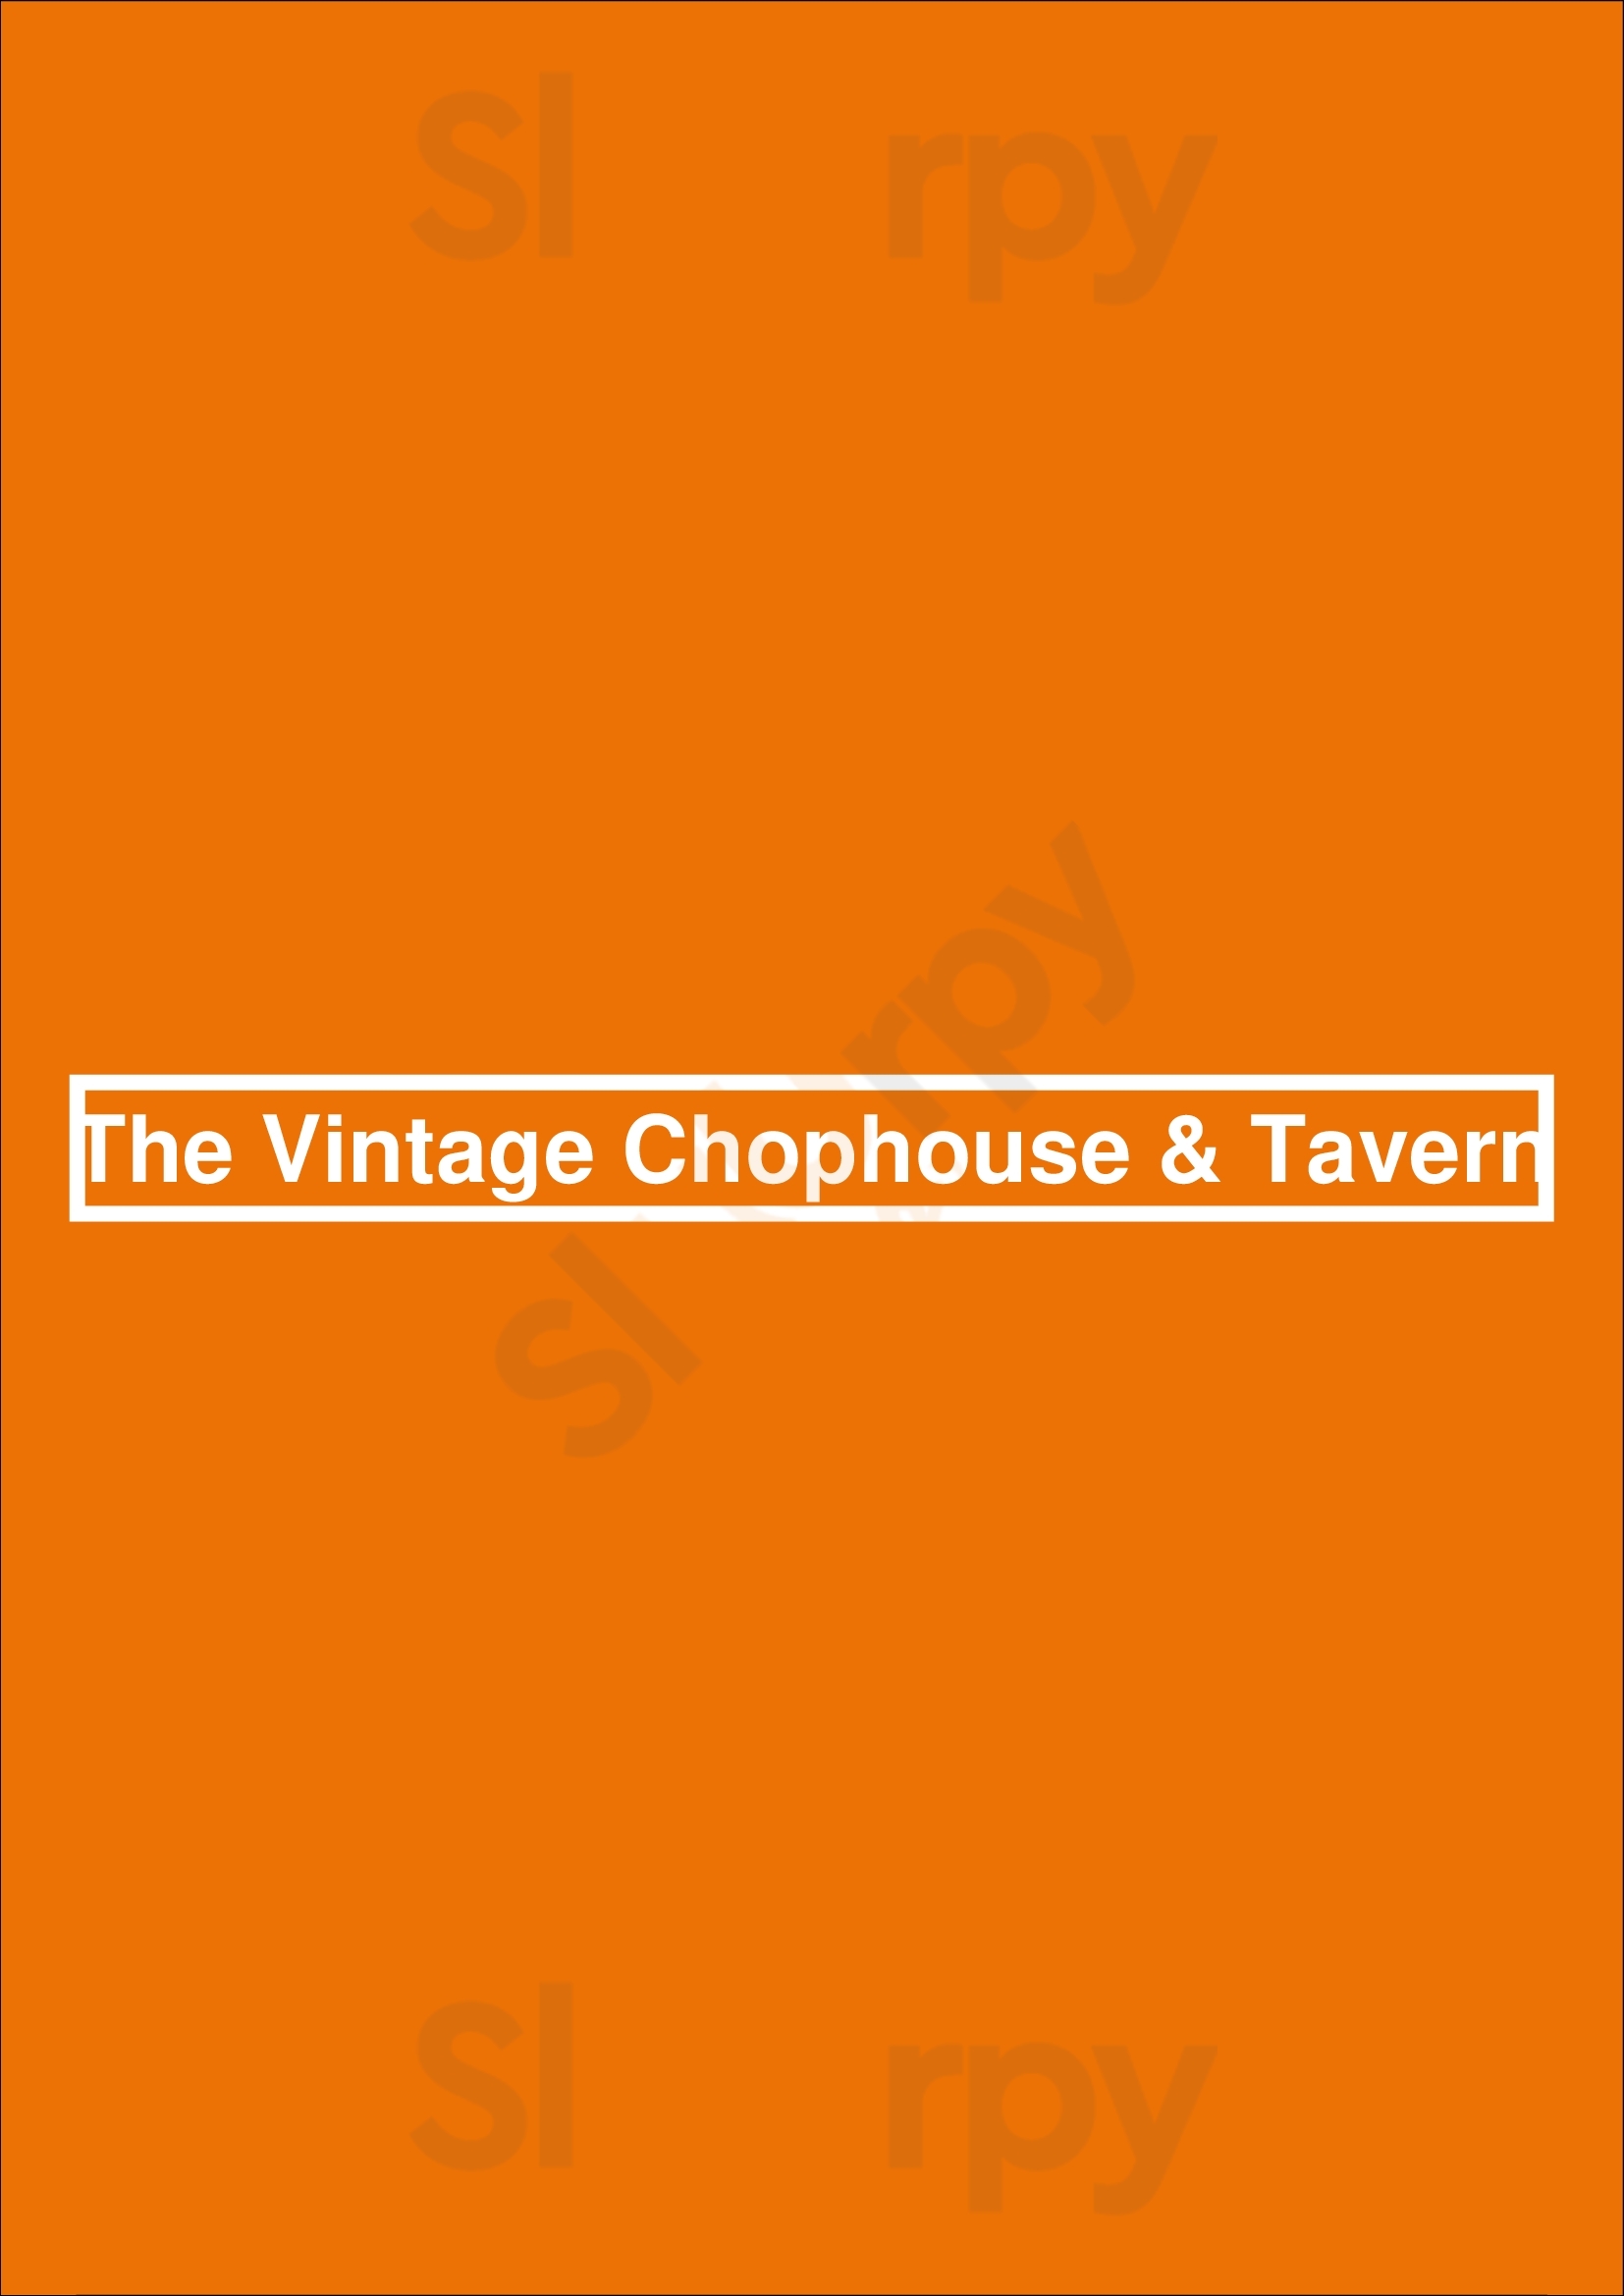 Vintage Chophouse & Tavern Calgary Menu - 1